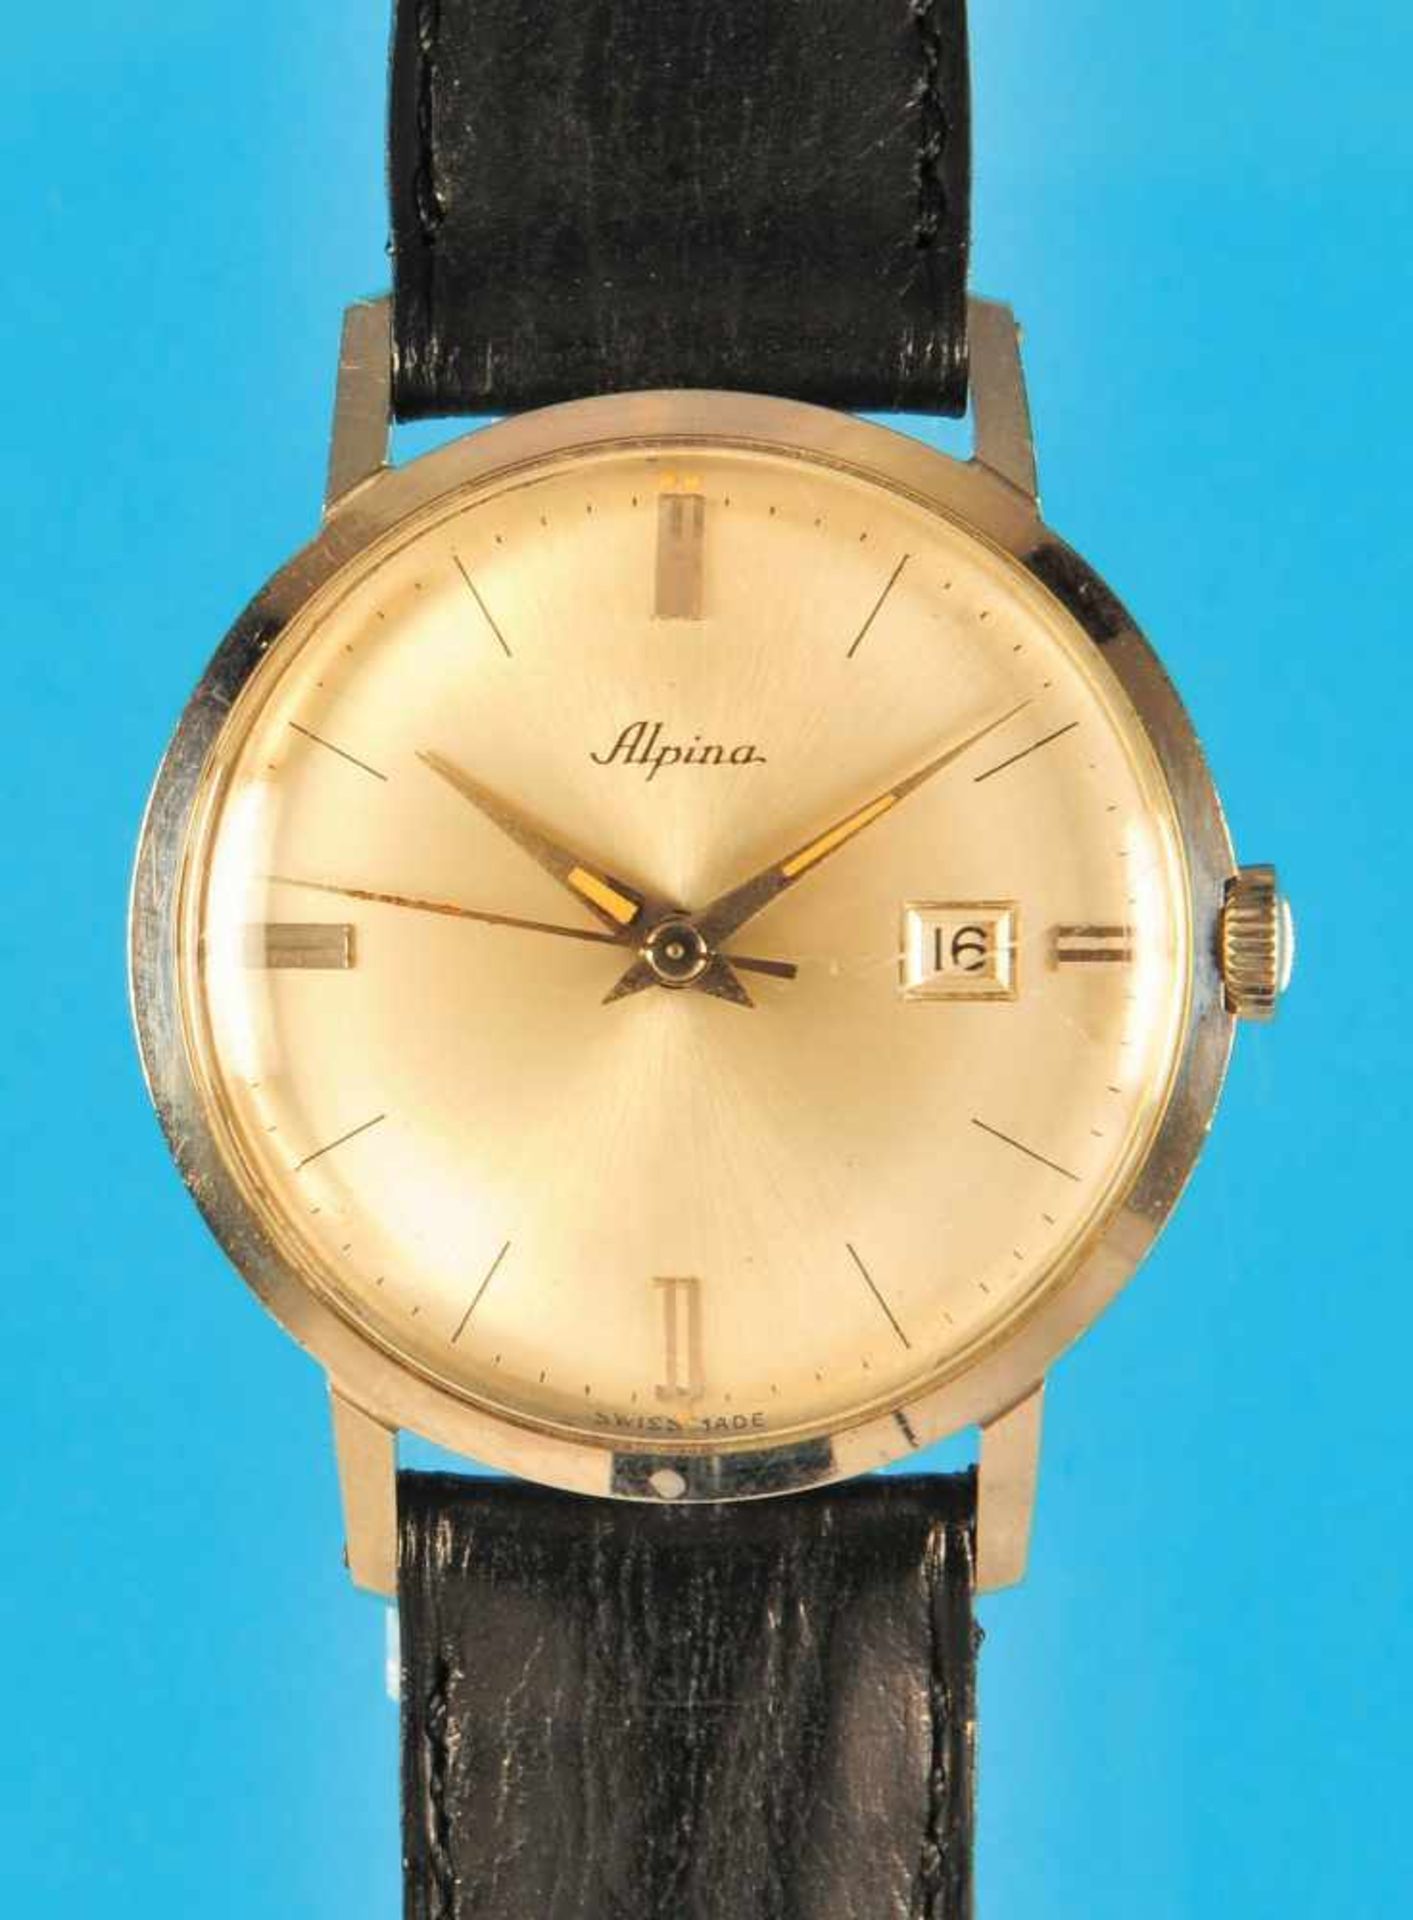 Steel wristwatch, AlpinaStahlarmbanduhr, Alpina, verschraubtes Gehäuse, versilbertes Zifferblatt mit